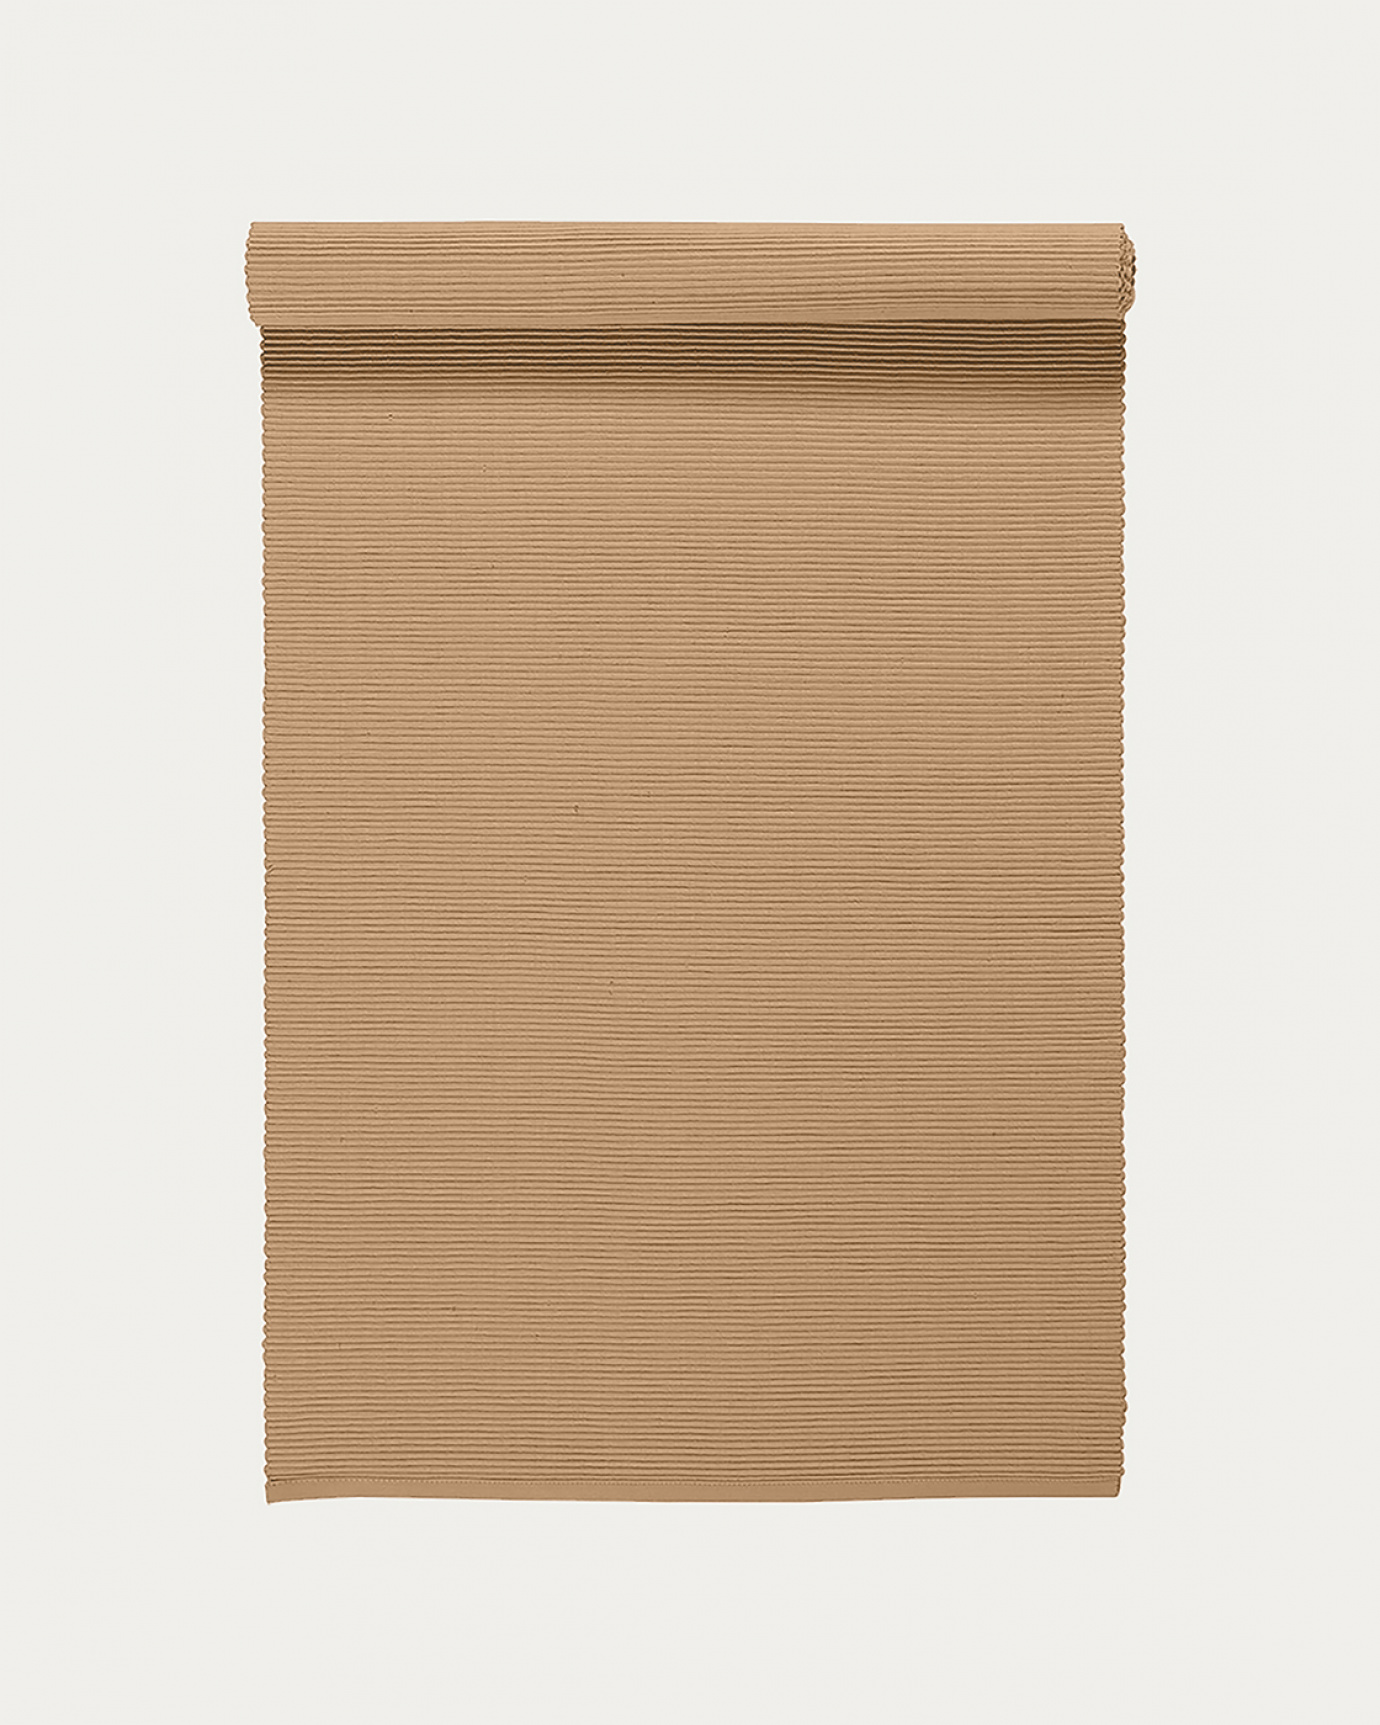 Produktbild kamelbraun UNI Tischläufer aus weicher Baumwolle in Rippenqualität von LINUM DESIGN. Größe 45x150 cm.